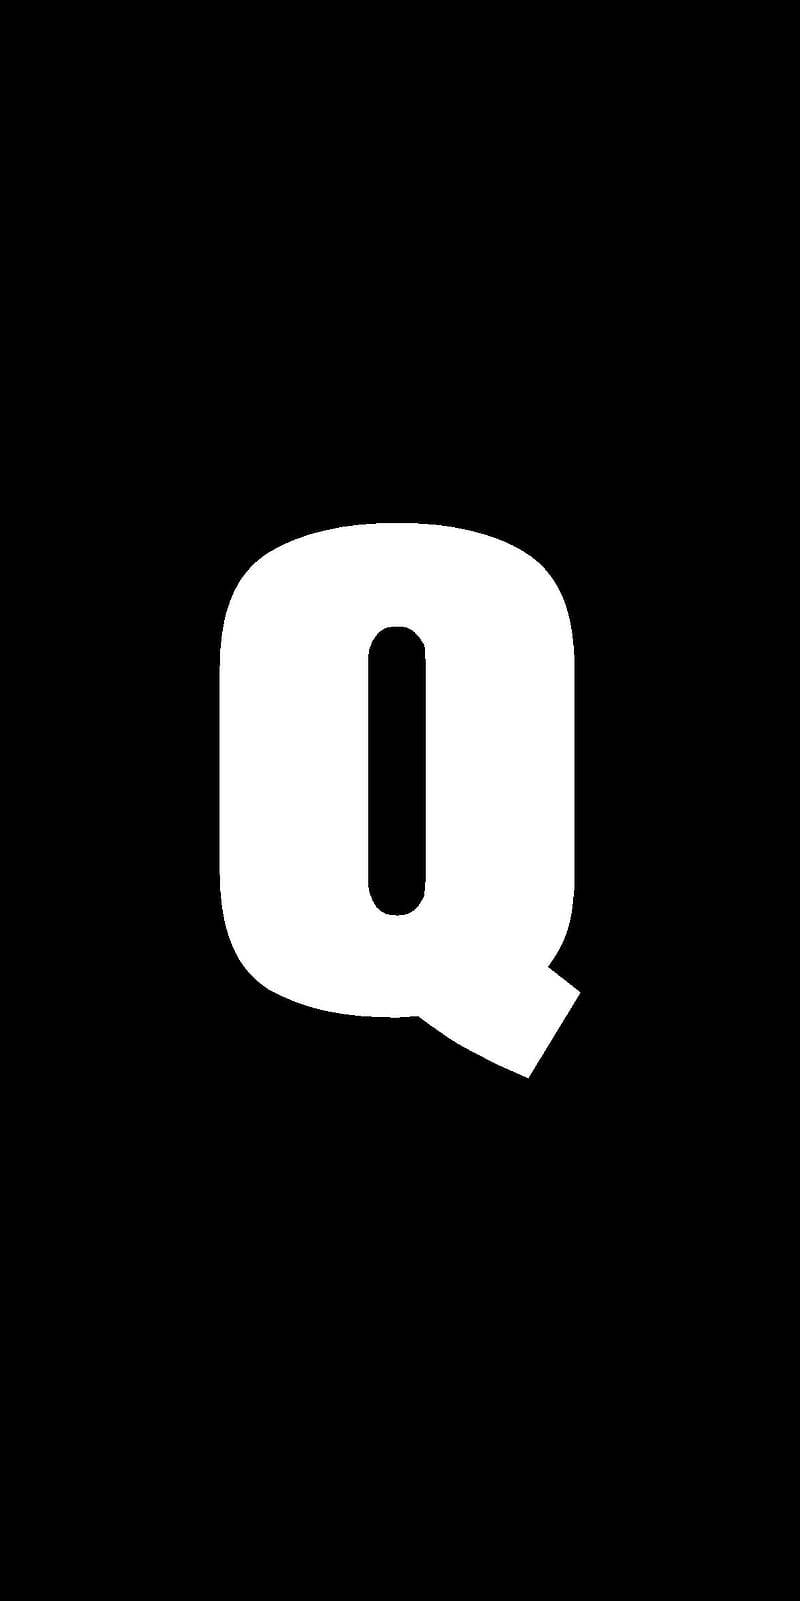 White Letter Q Name Black Background